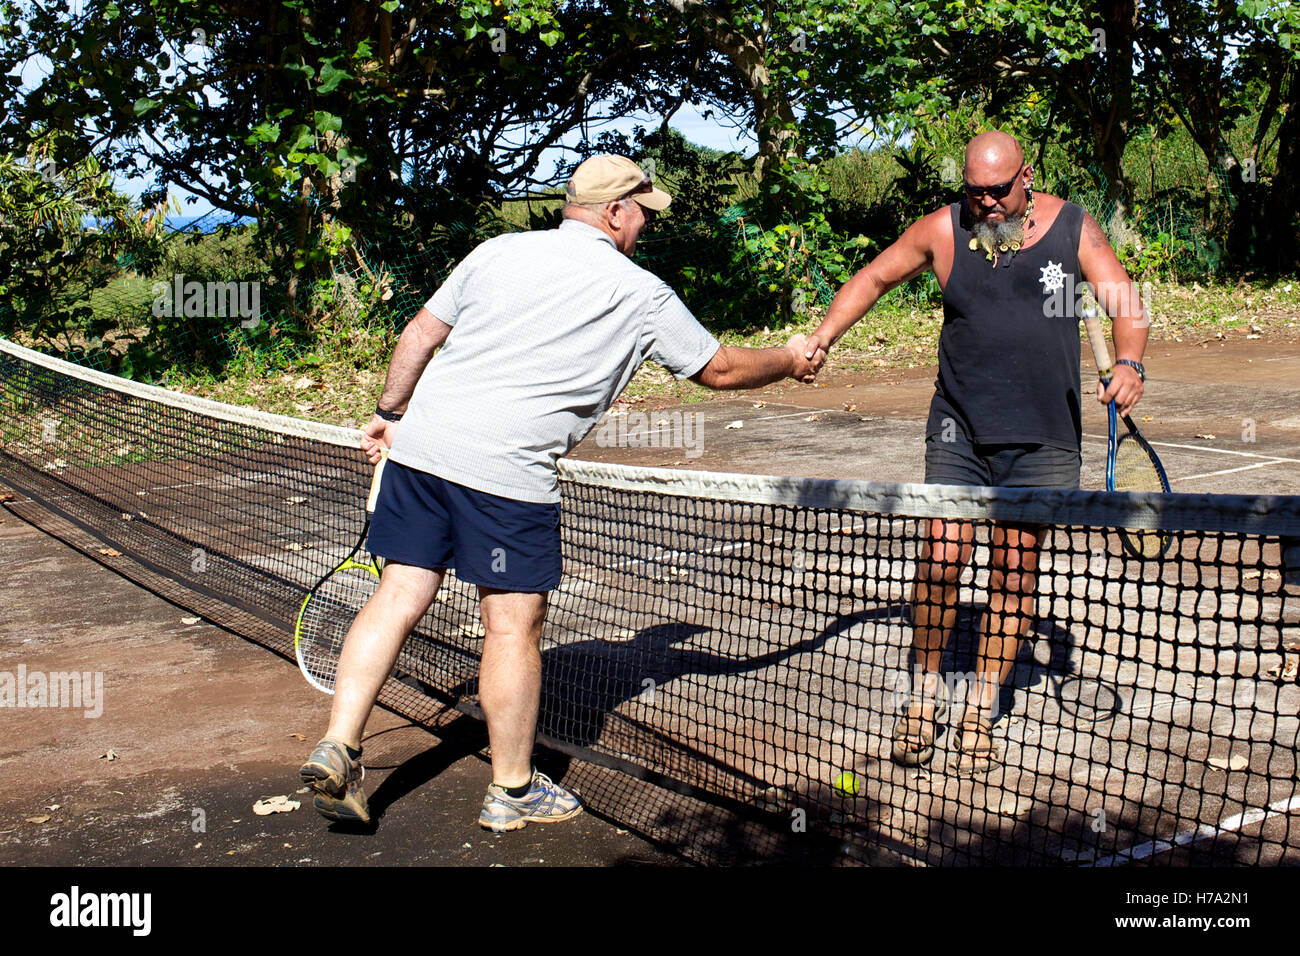 Pitcairn, Söhne von Meuterern! -03/06/2012 - Pitcairn / Pitcairn - Tennisspiel auf Pitcairn Insel zwischen Piraten Klinke und Bill der Polizist - Olivier Goujon / Le Pictorium Stockfoto